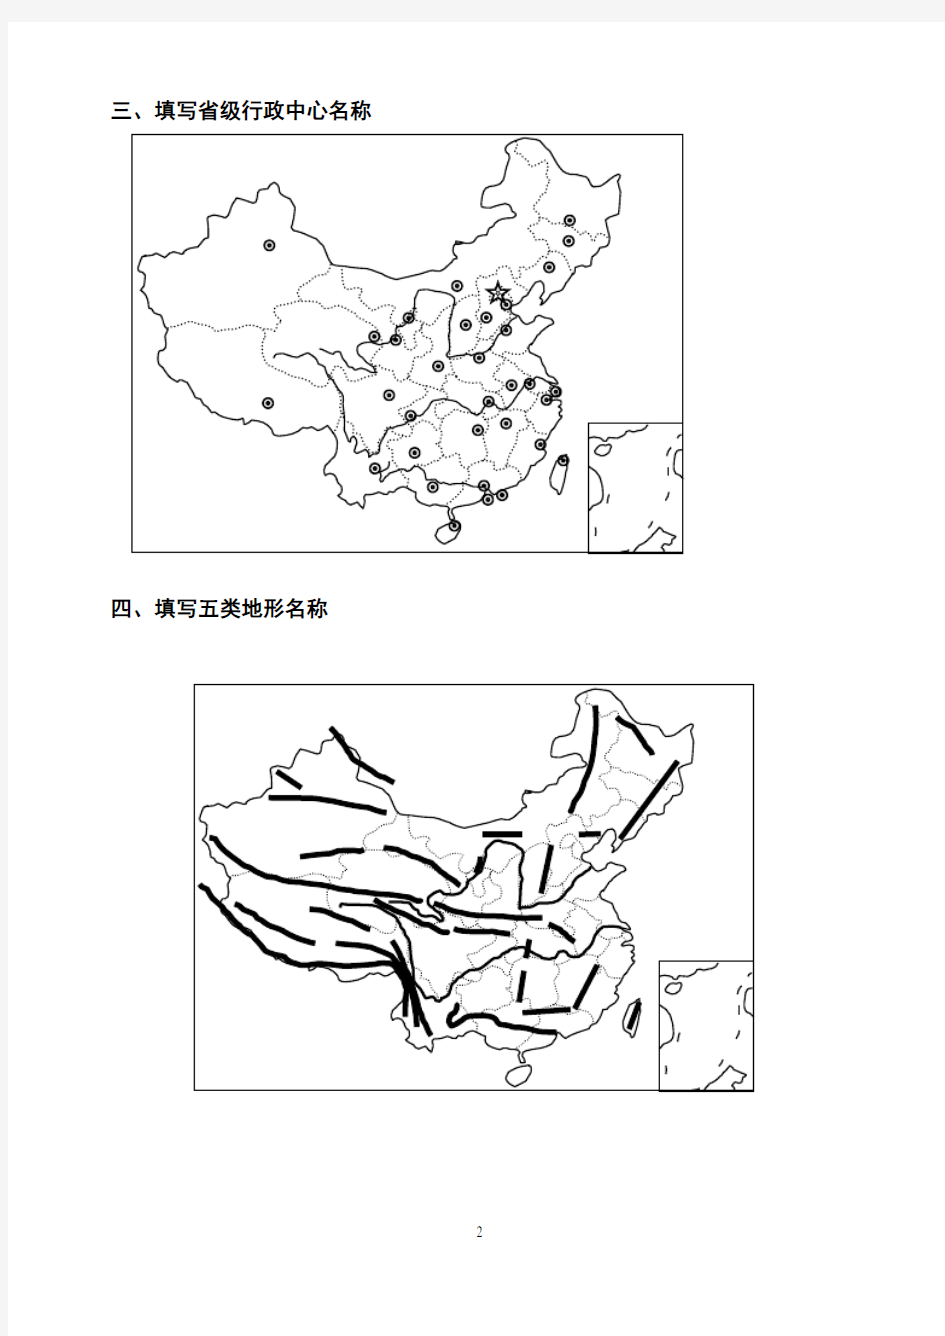 中国地理空间定位填图训练题